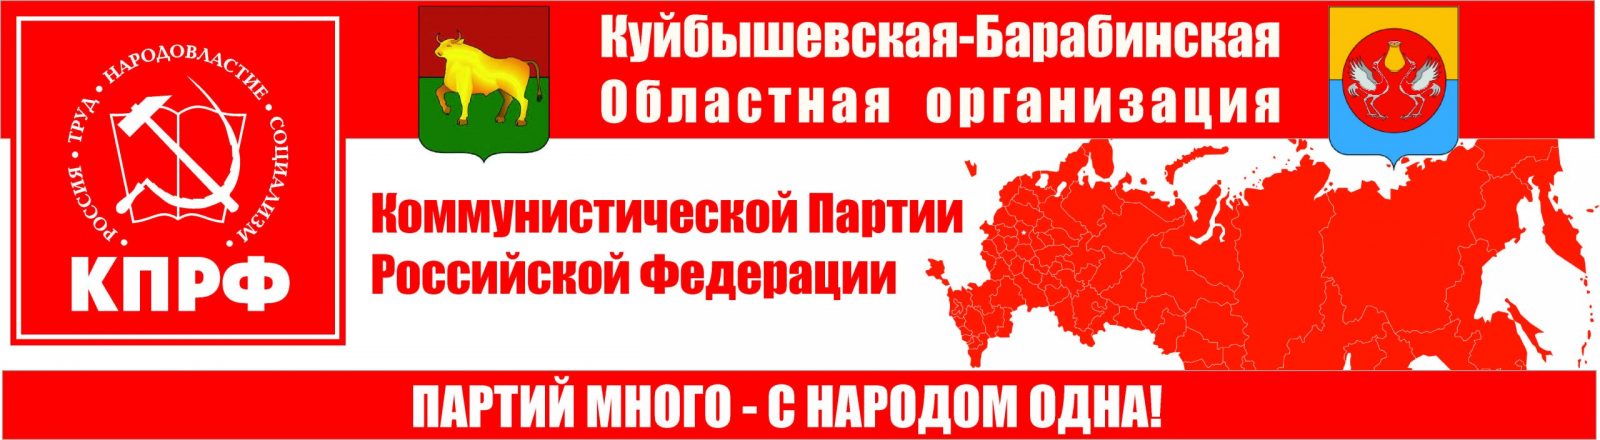 В Подмосковье открылся второго этапа XVIII съезда КПРФ